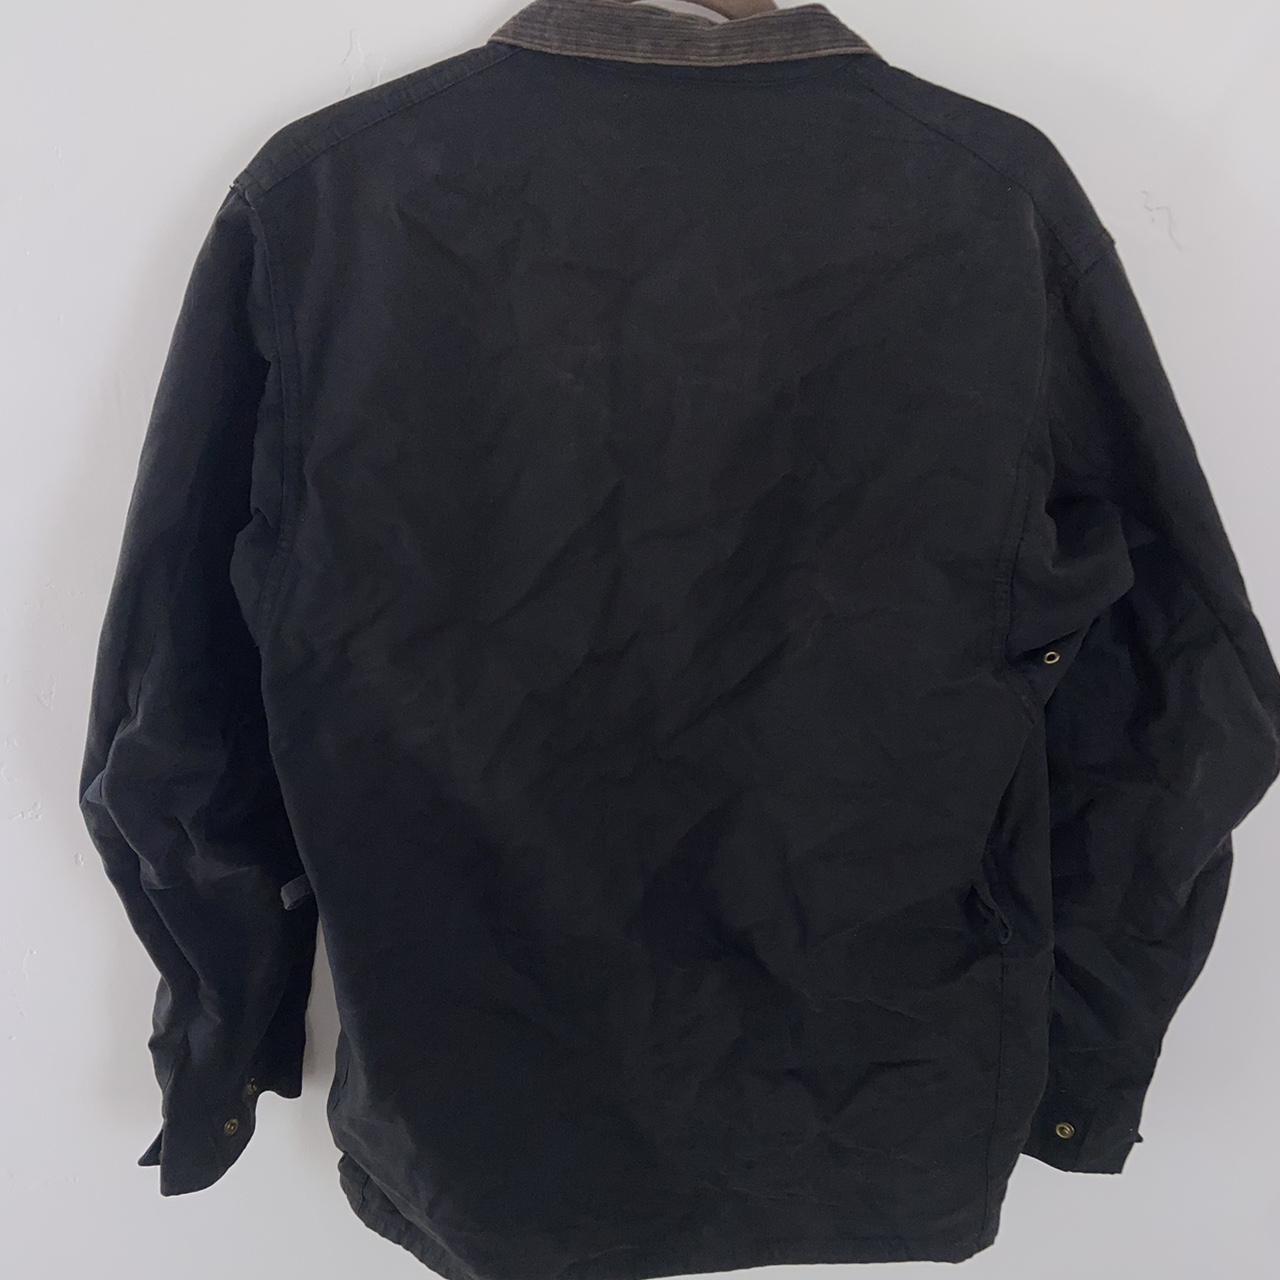 Barbour designer work jacket(black with brown... - Depop